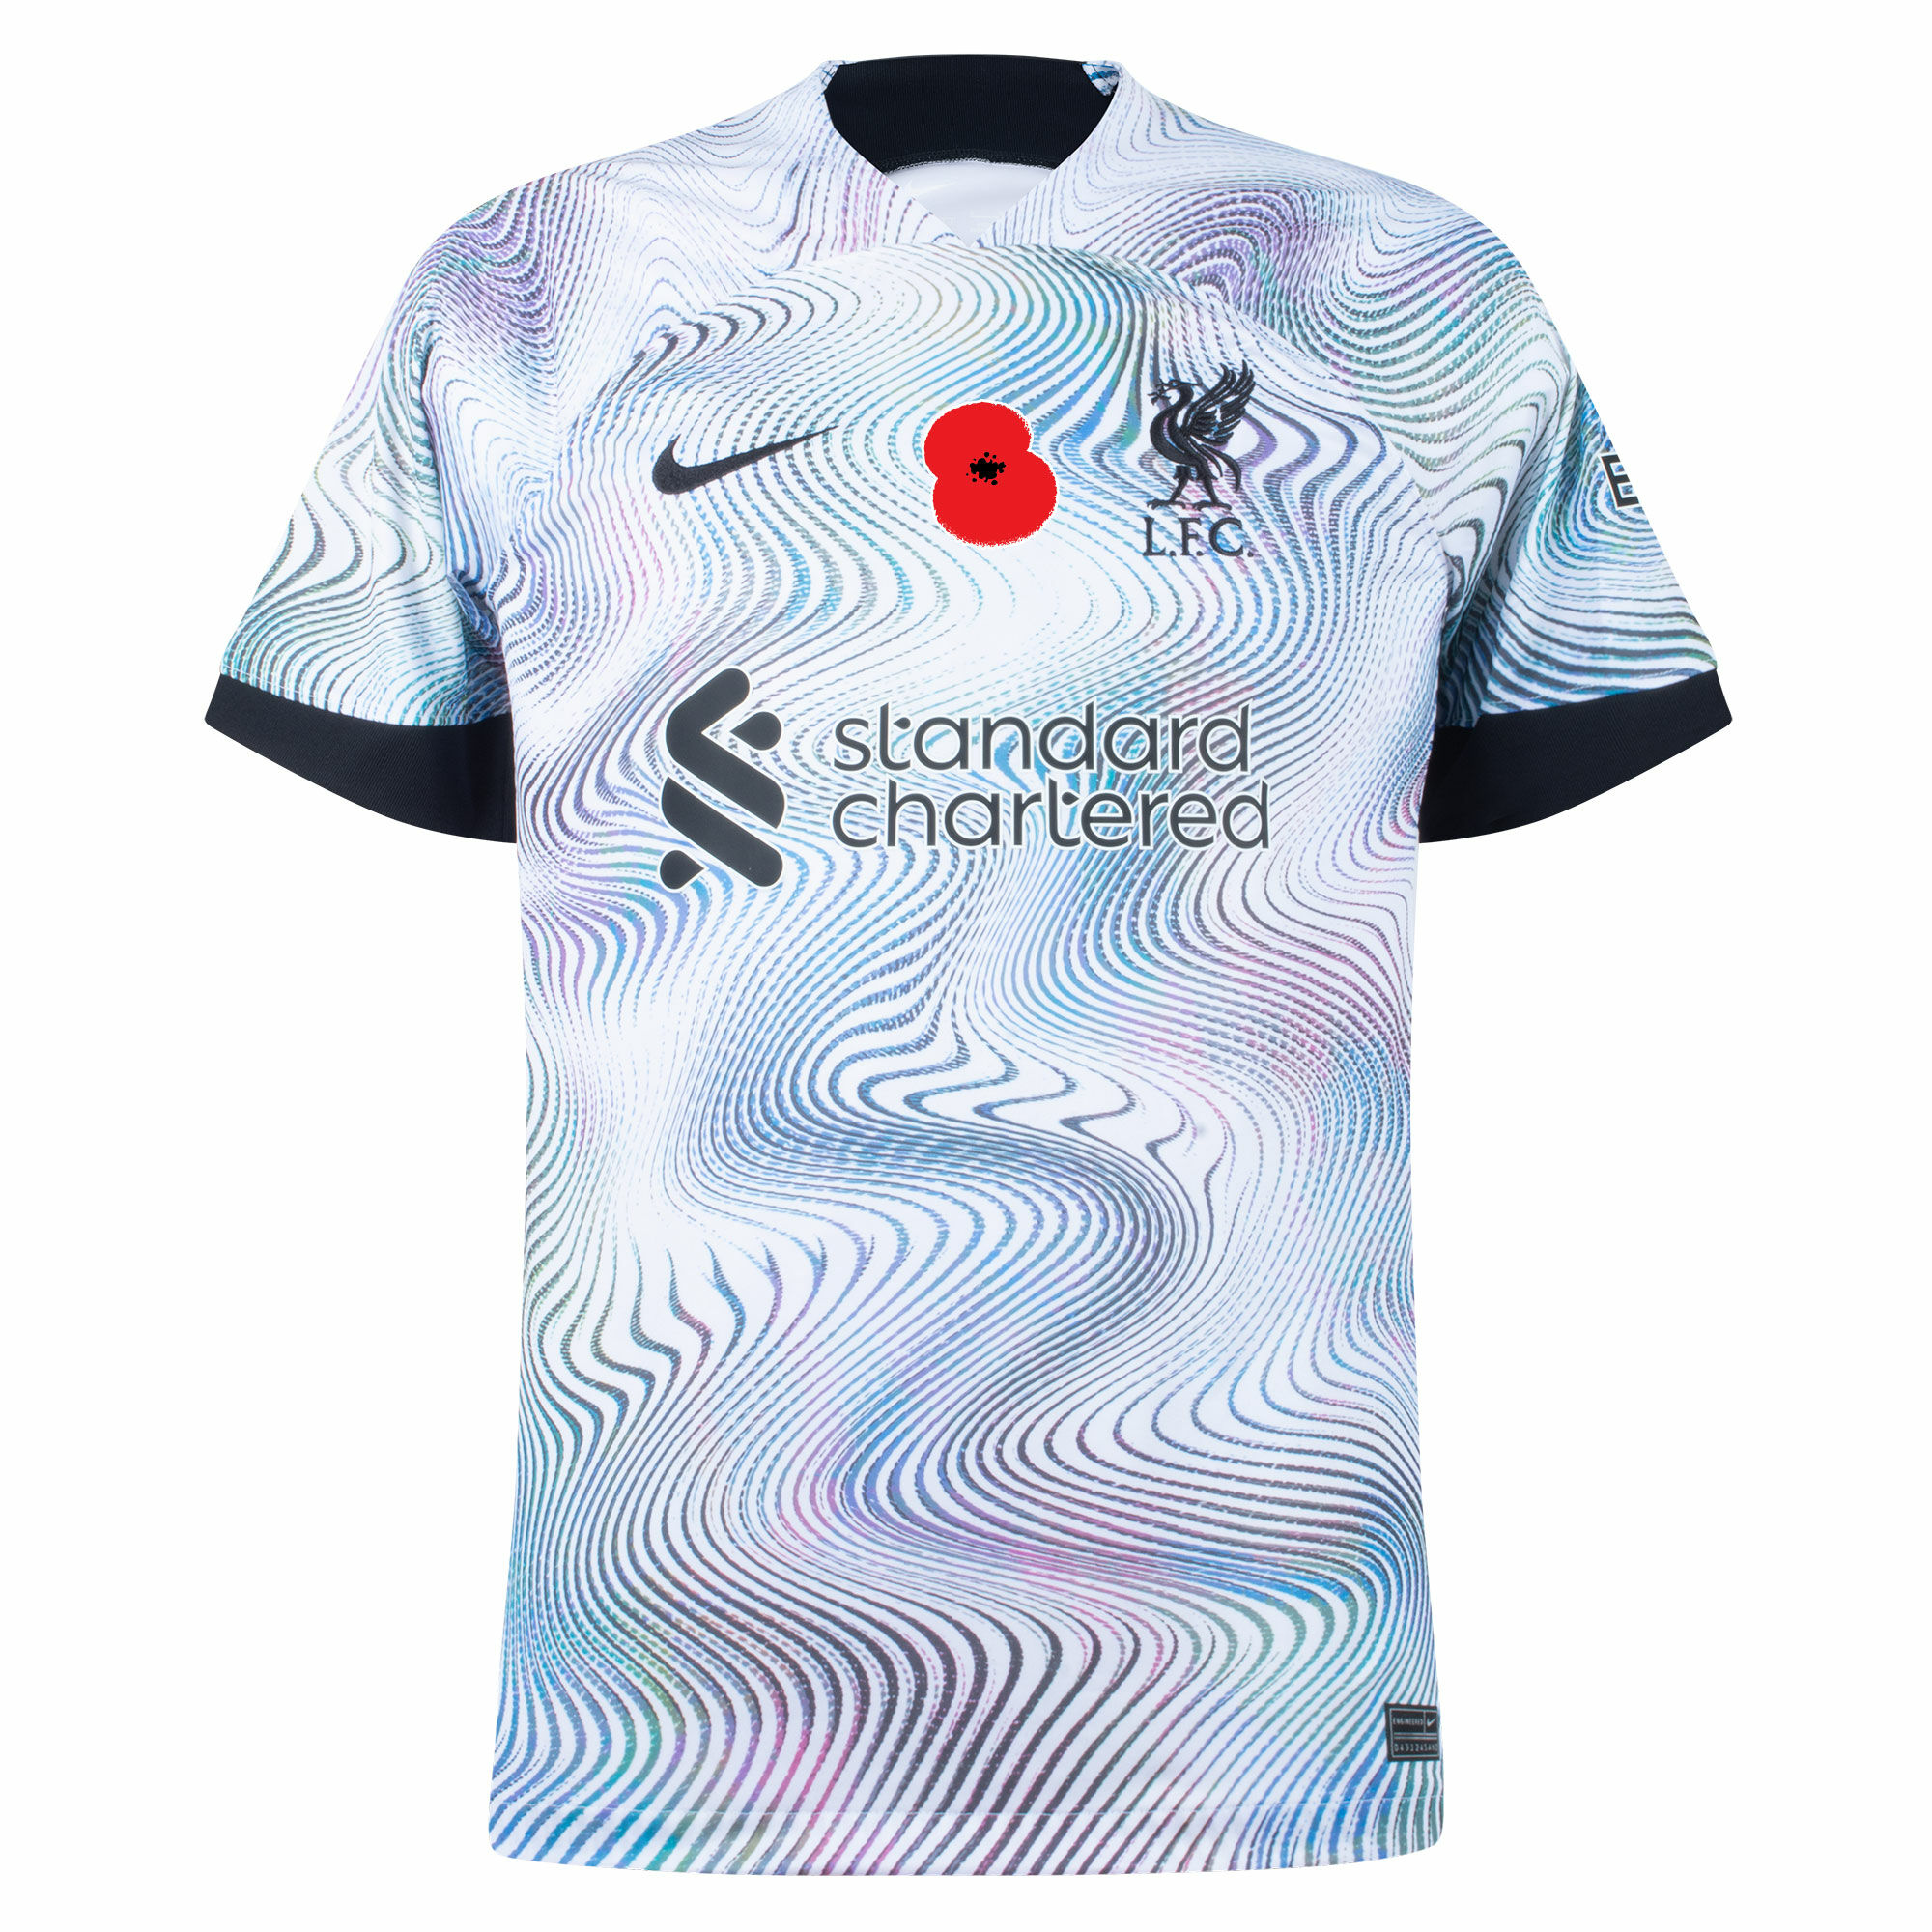 Liverpool - Dres fotbalový - logo British Legion Poppy, bílý, sezóna 2022/23, venkovní